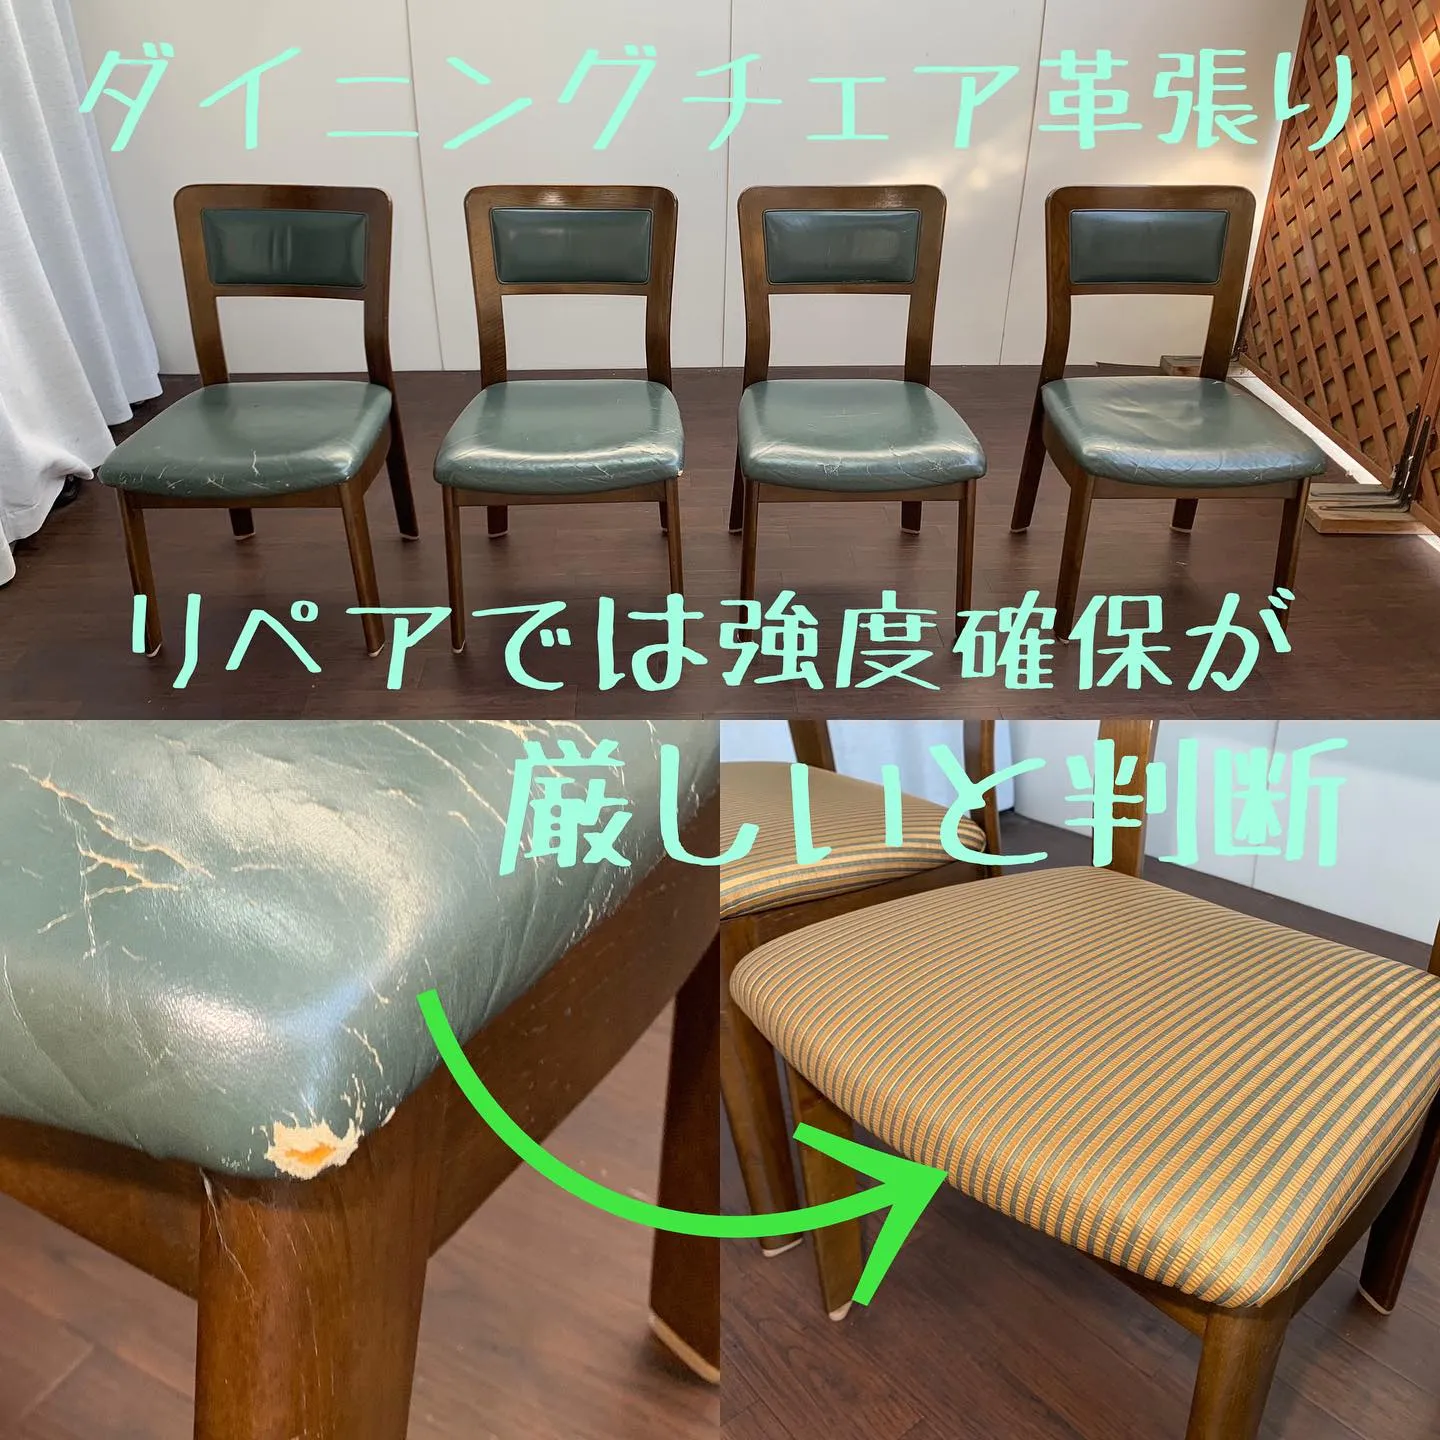 革張り椅子がおしゃれに⁉︎ 革→ストライプ柄合皮に張り替え、...